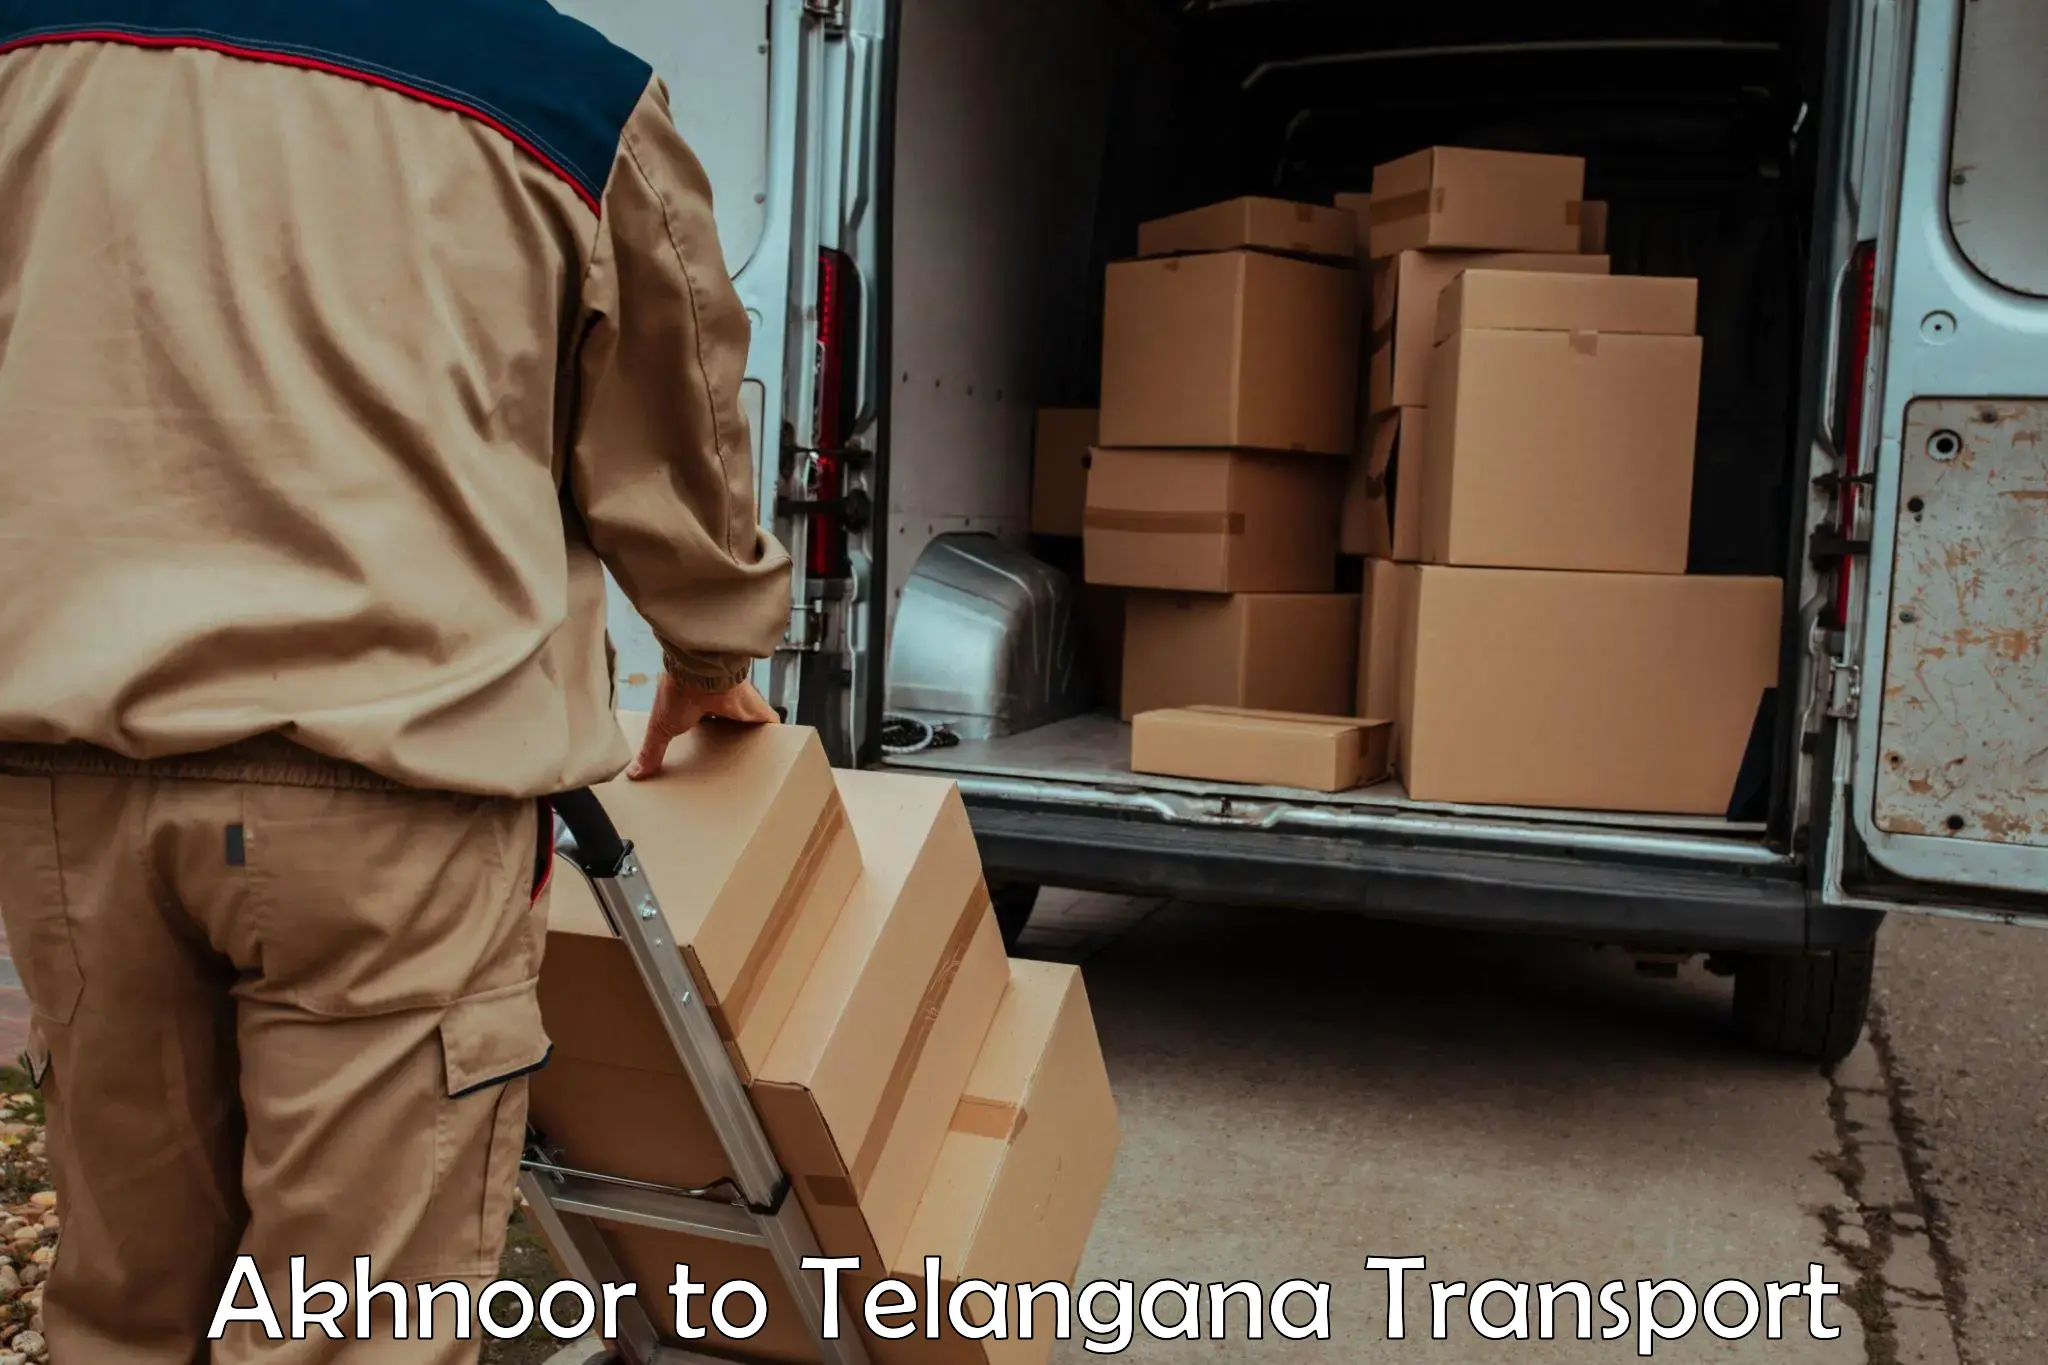 Truck transport companies in India Akhnoor to Telangana